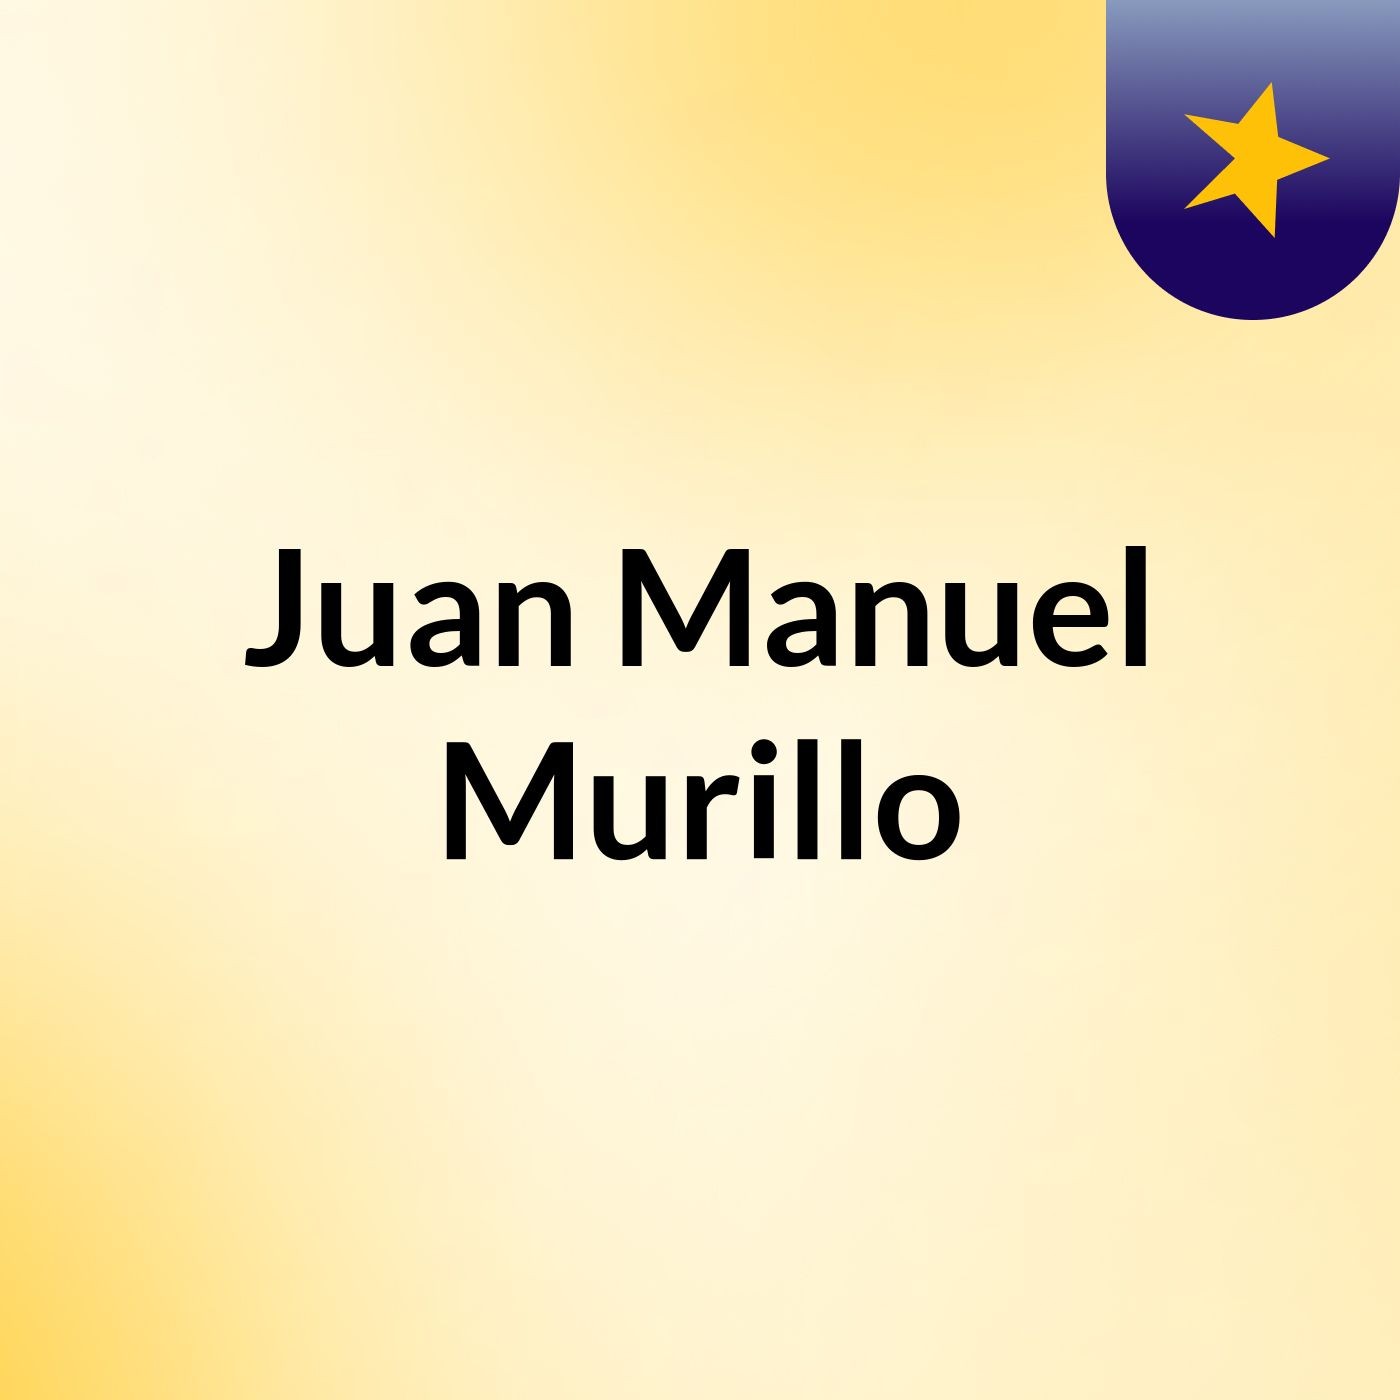 Juan Manuel Murillo